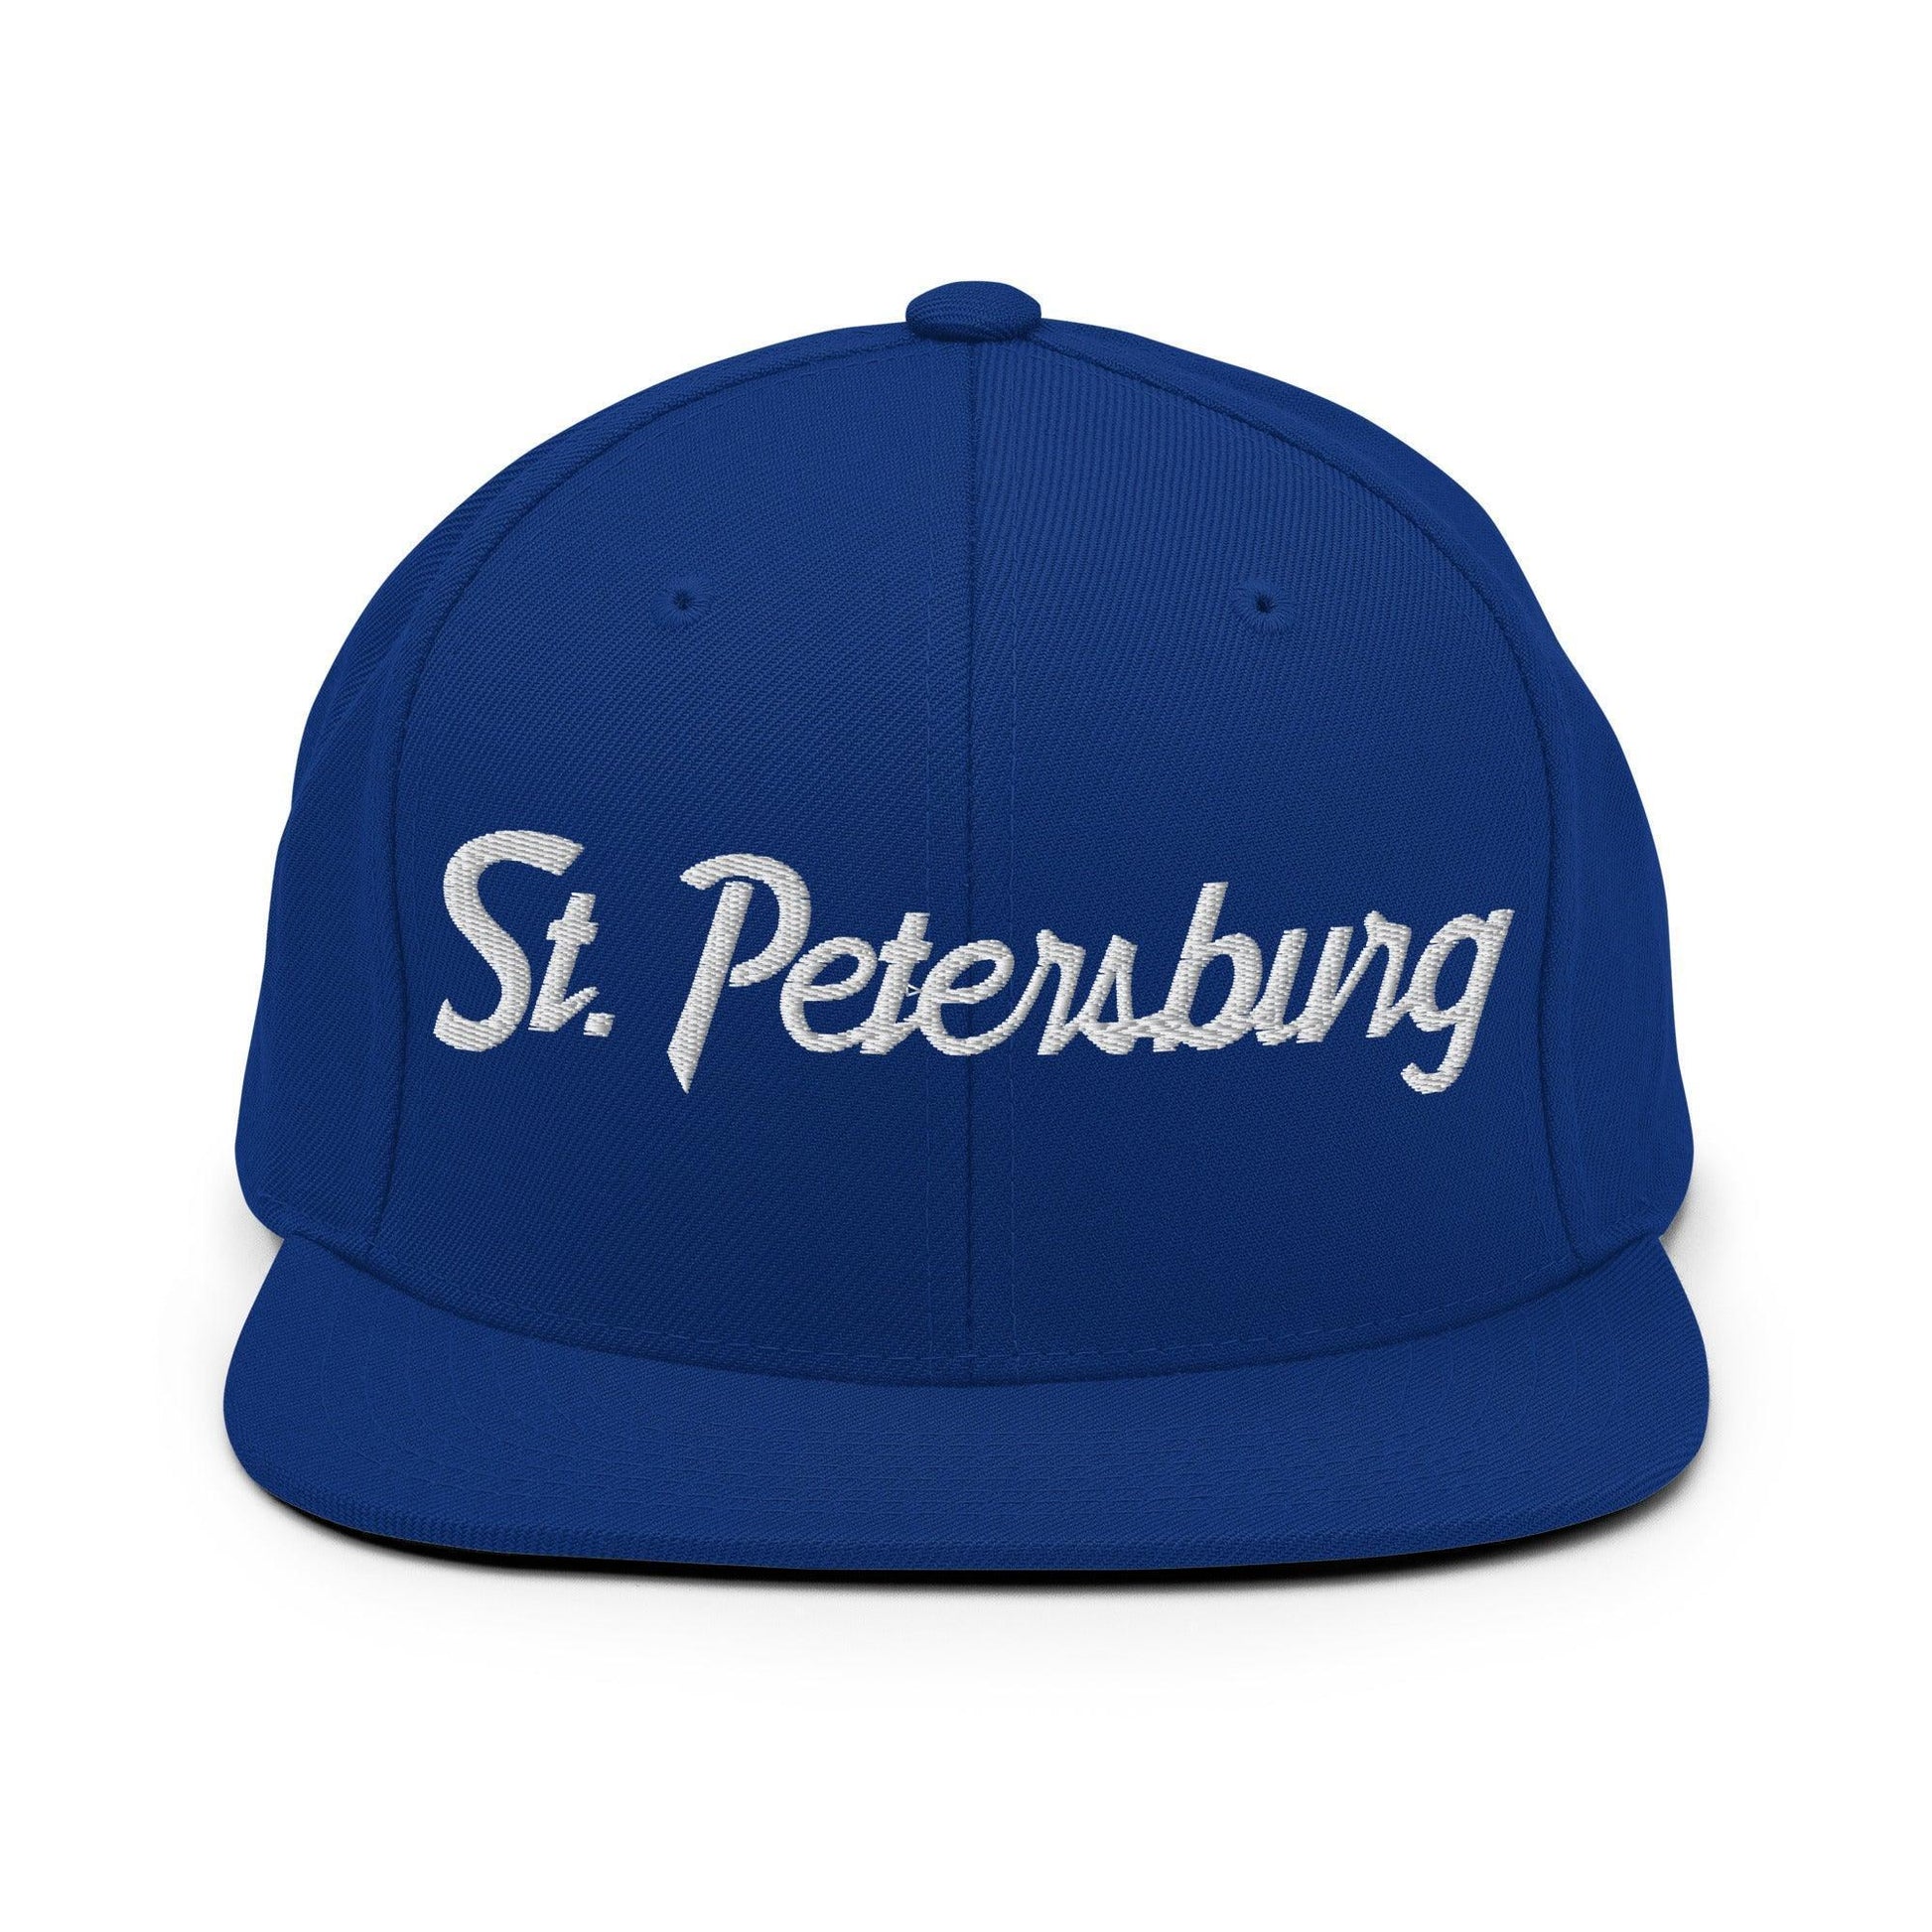 St. Petersburg Script Snapback Hat Royal Blue